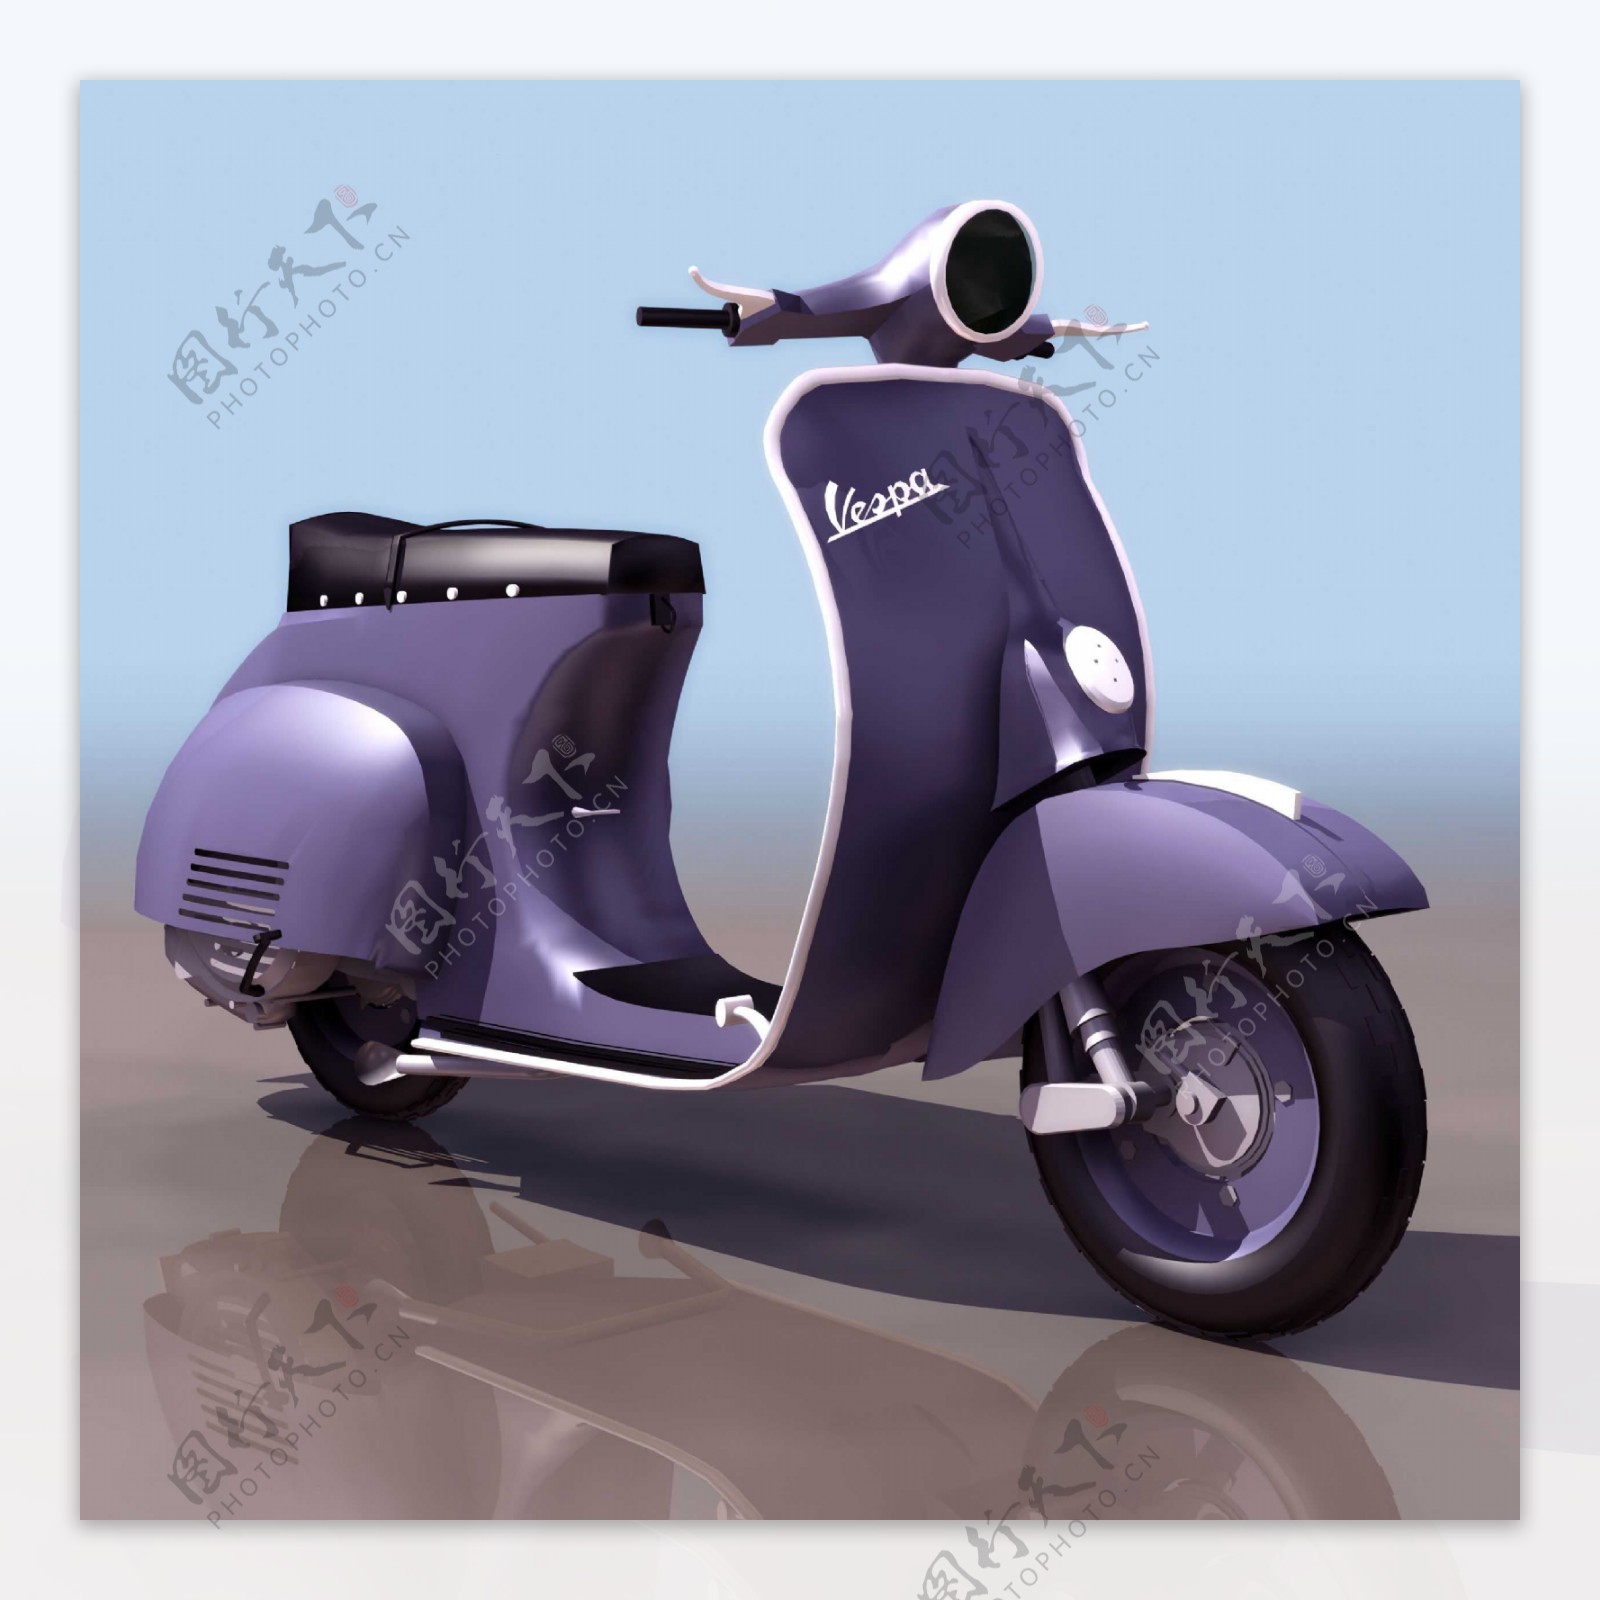 VespaMotorcycle摩托车